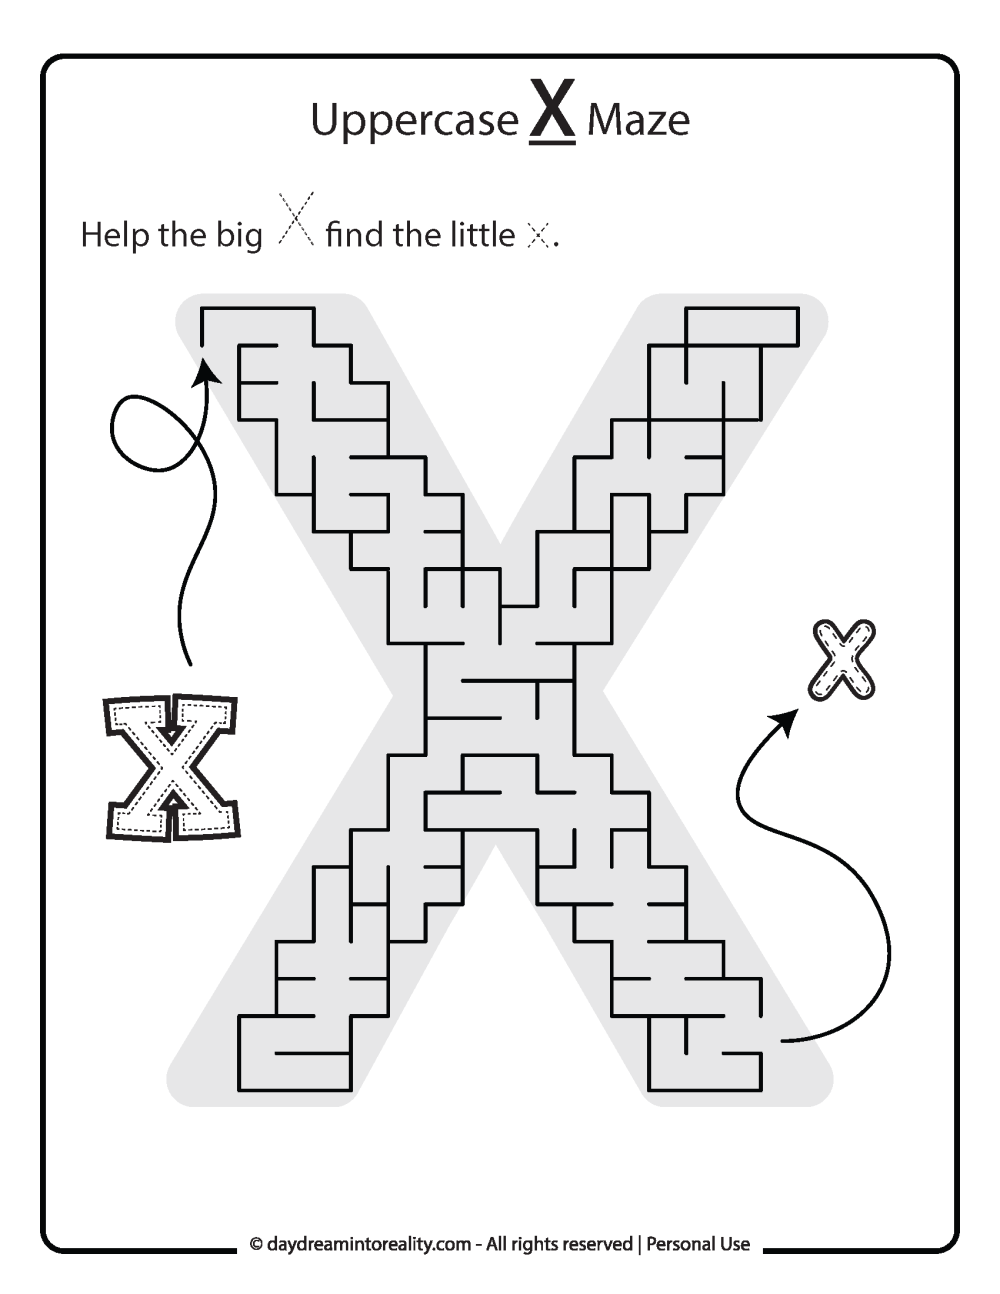 Uppercase "X" Maze Free Printable